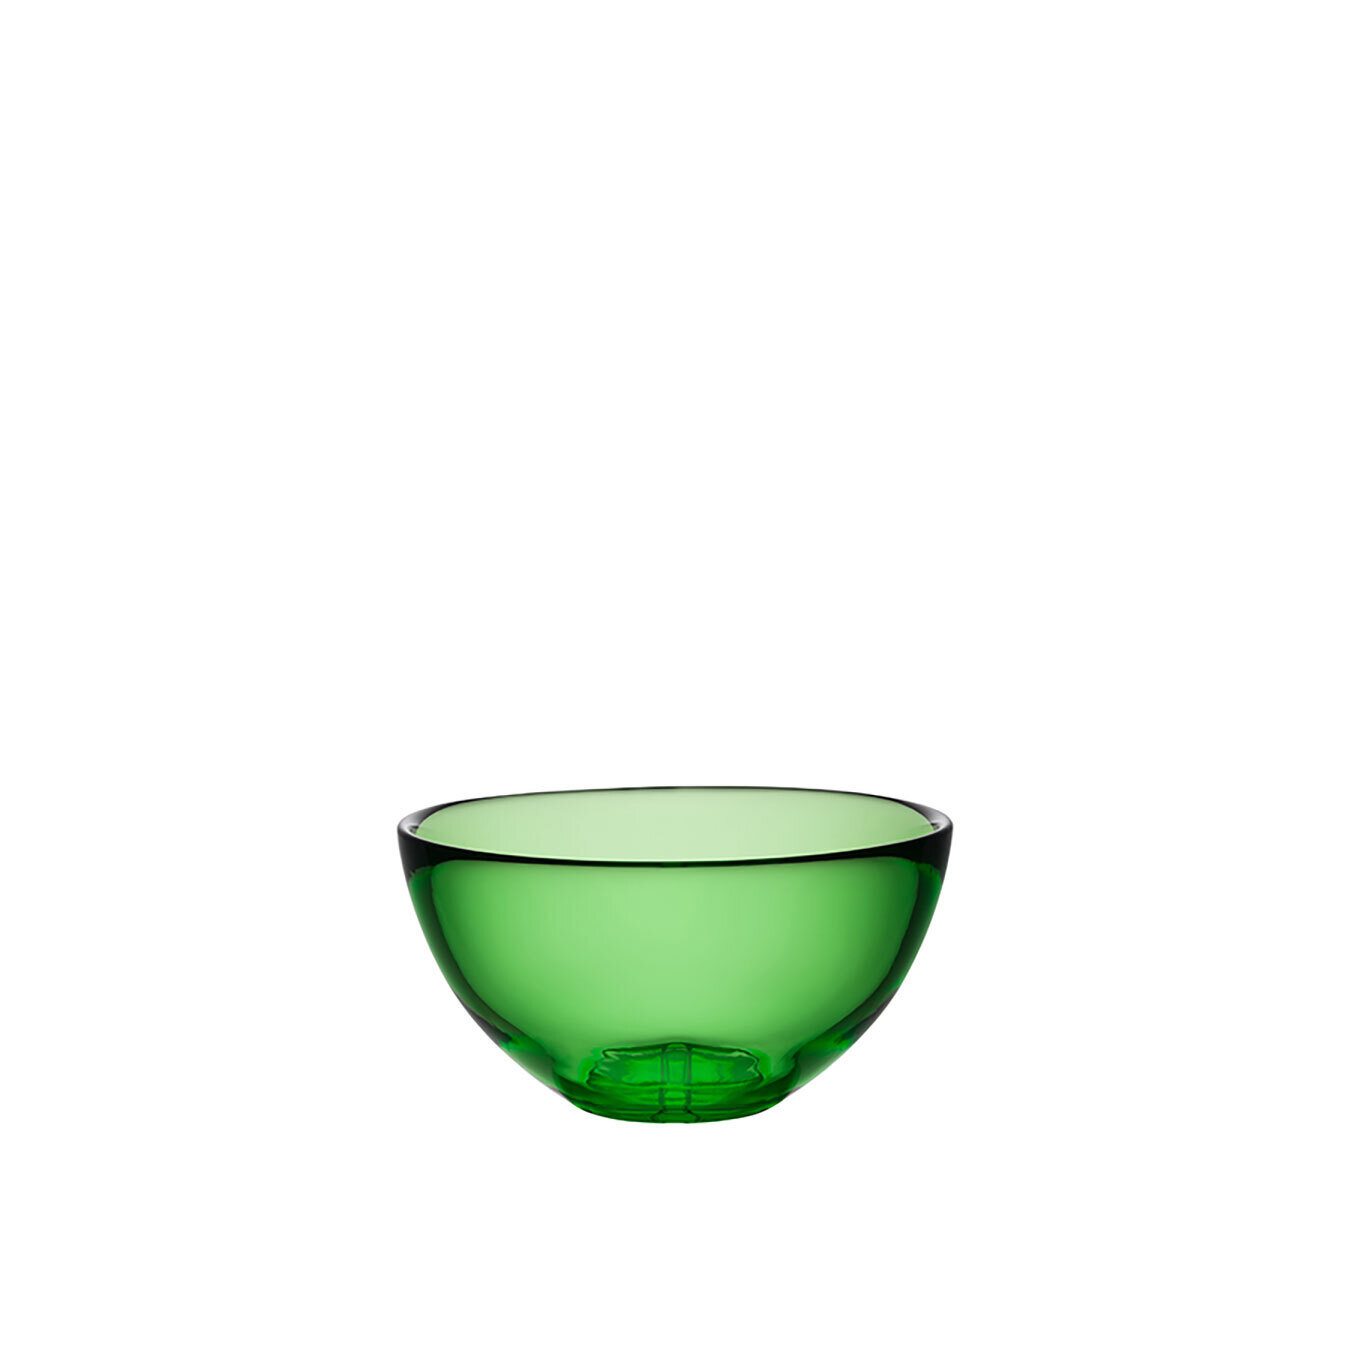 Kosta Boda Bruk Serving Bowl Small Apple Green 7051801